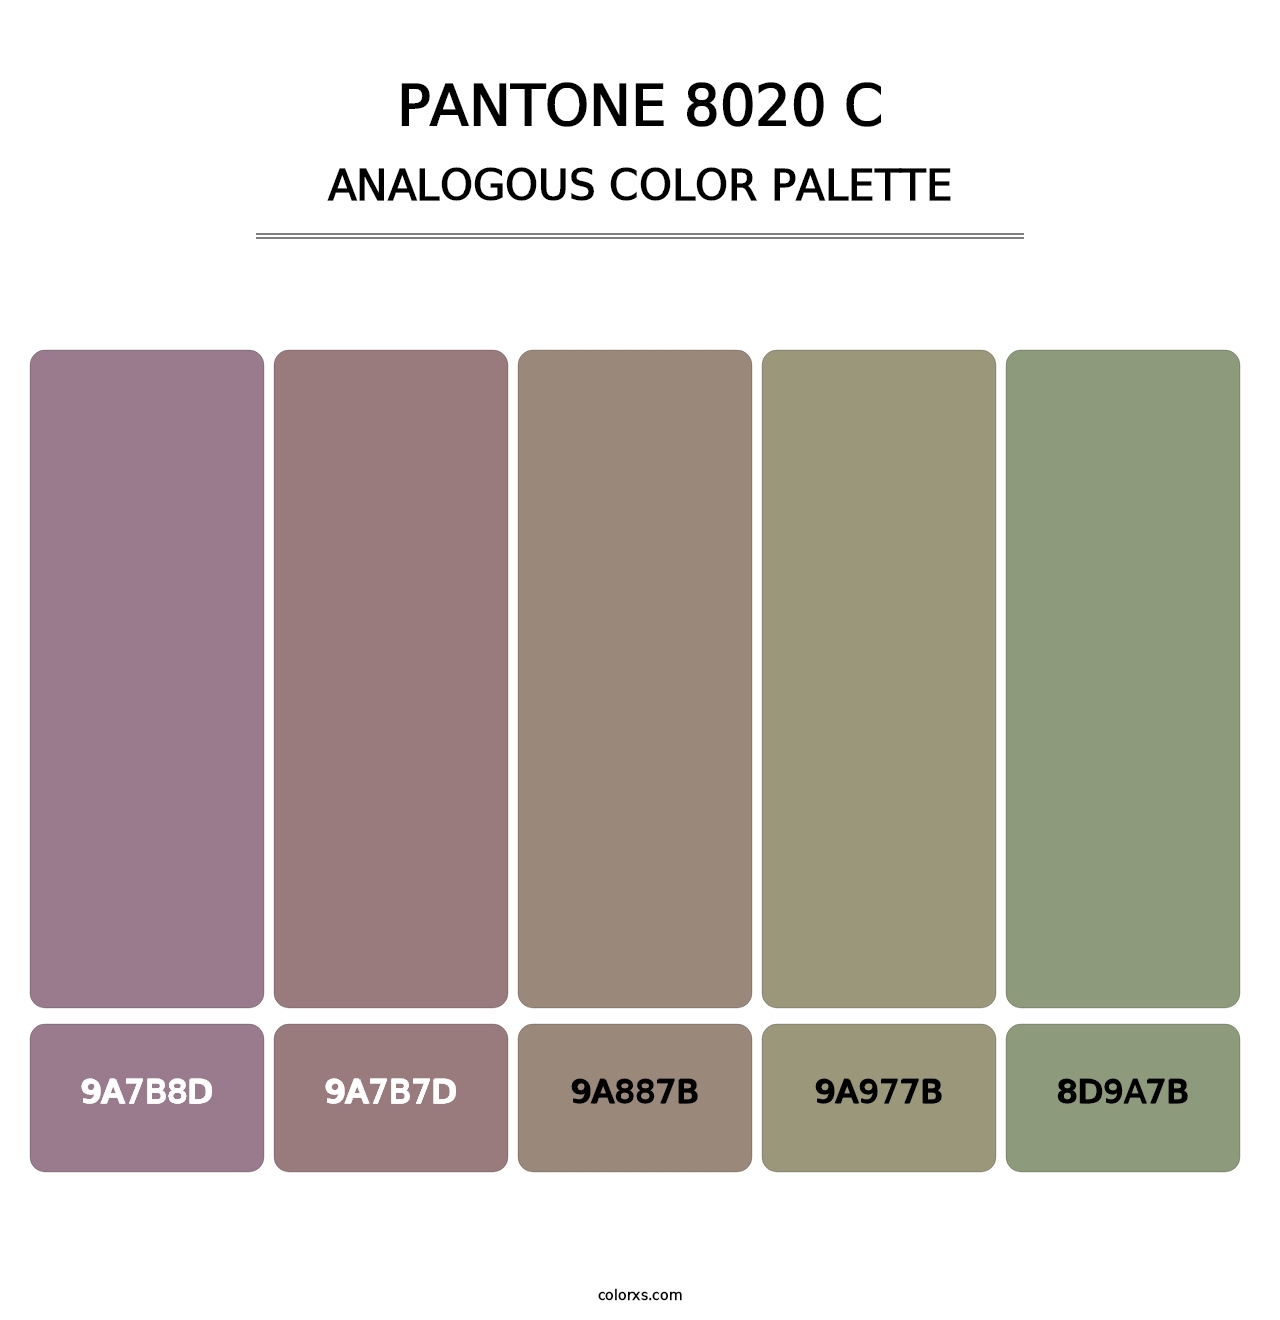 PANTONE 8020 C - Analogous Color Palette